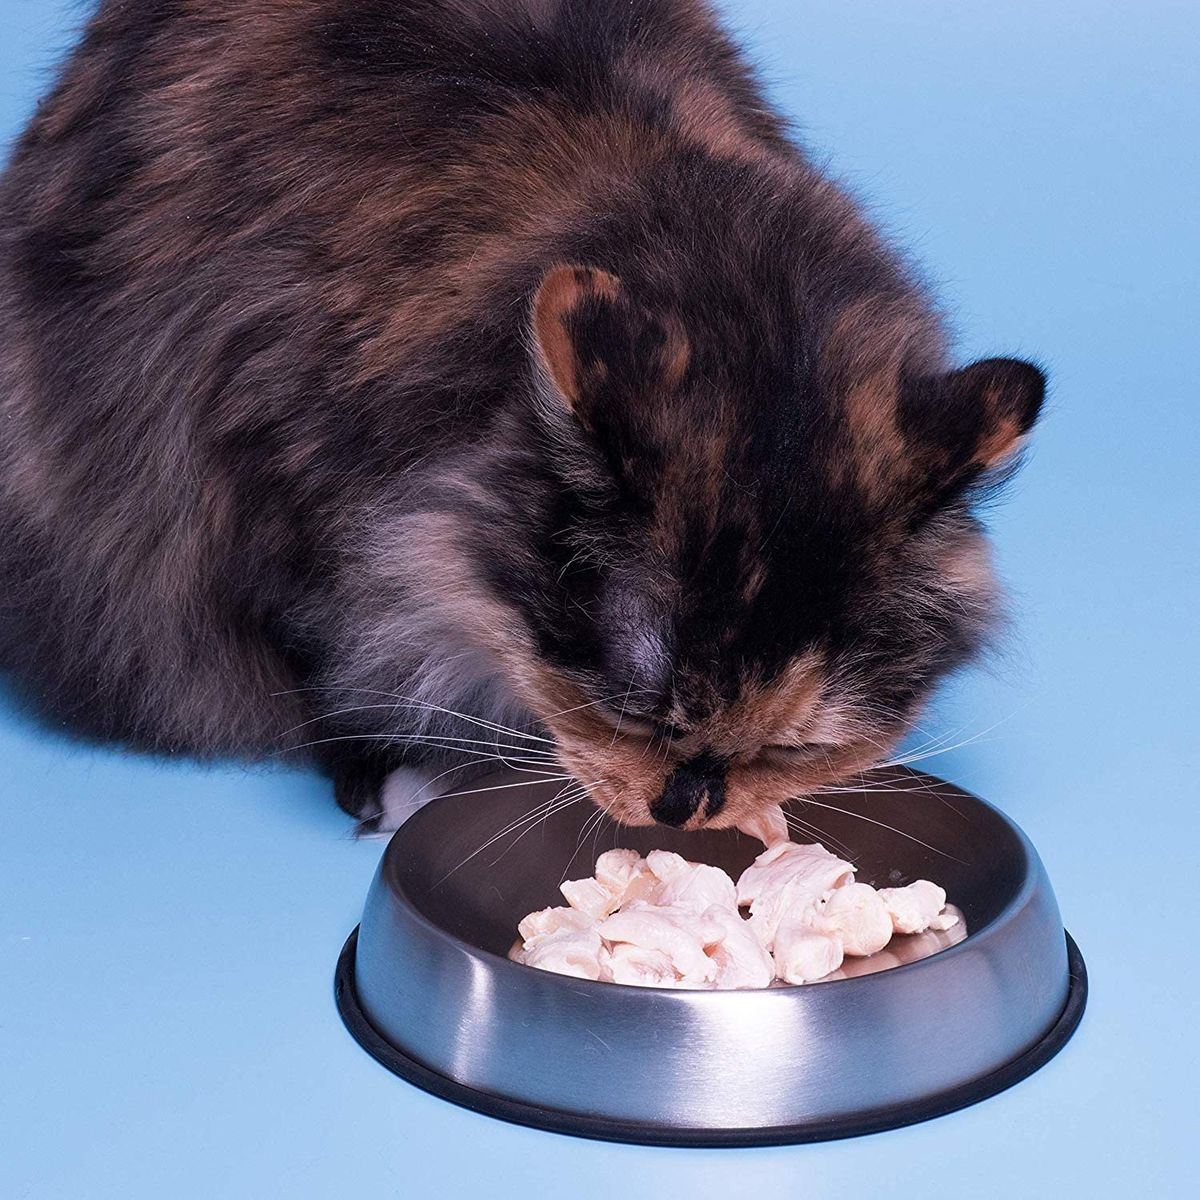 5 najlepszych misek na karmę dla kotów według weterynarza